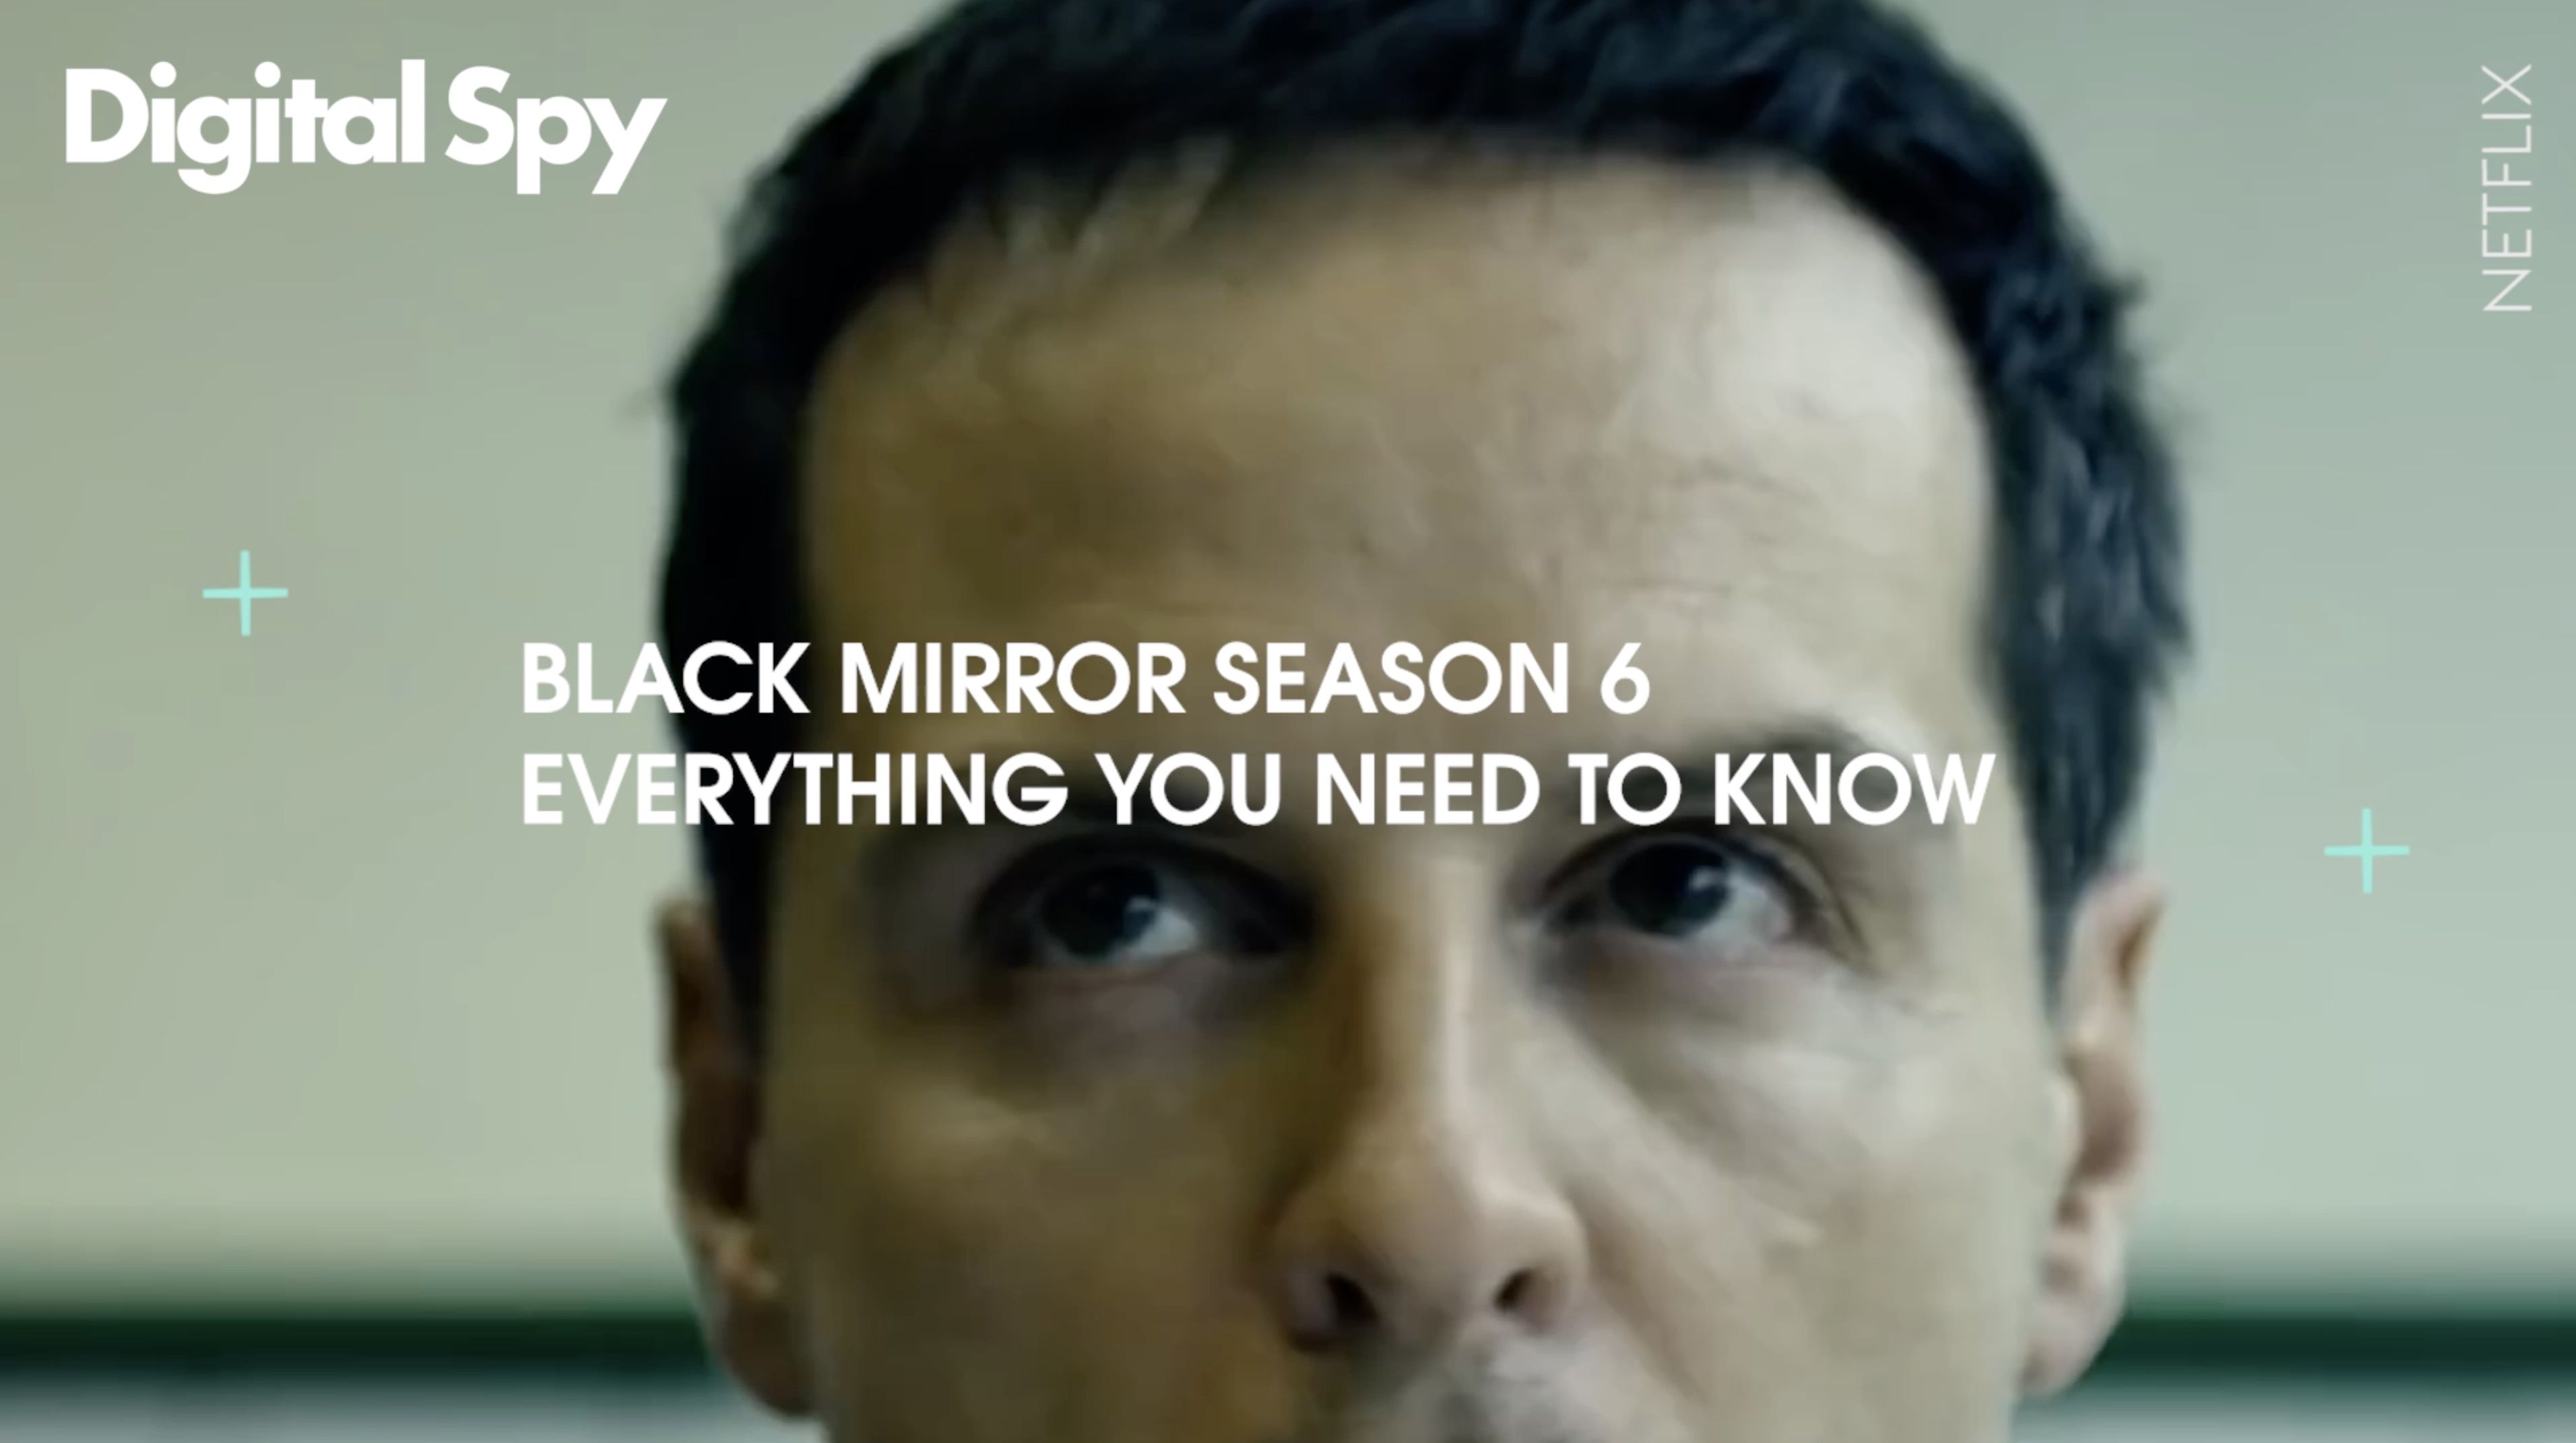 Black mirror season 6